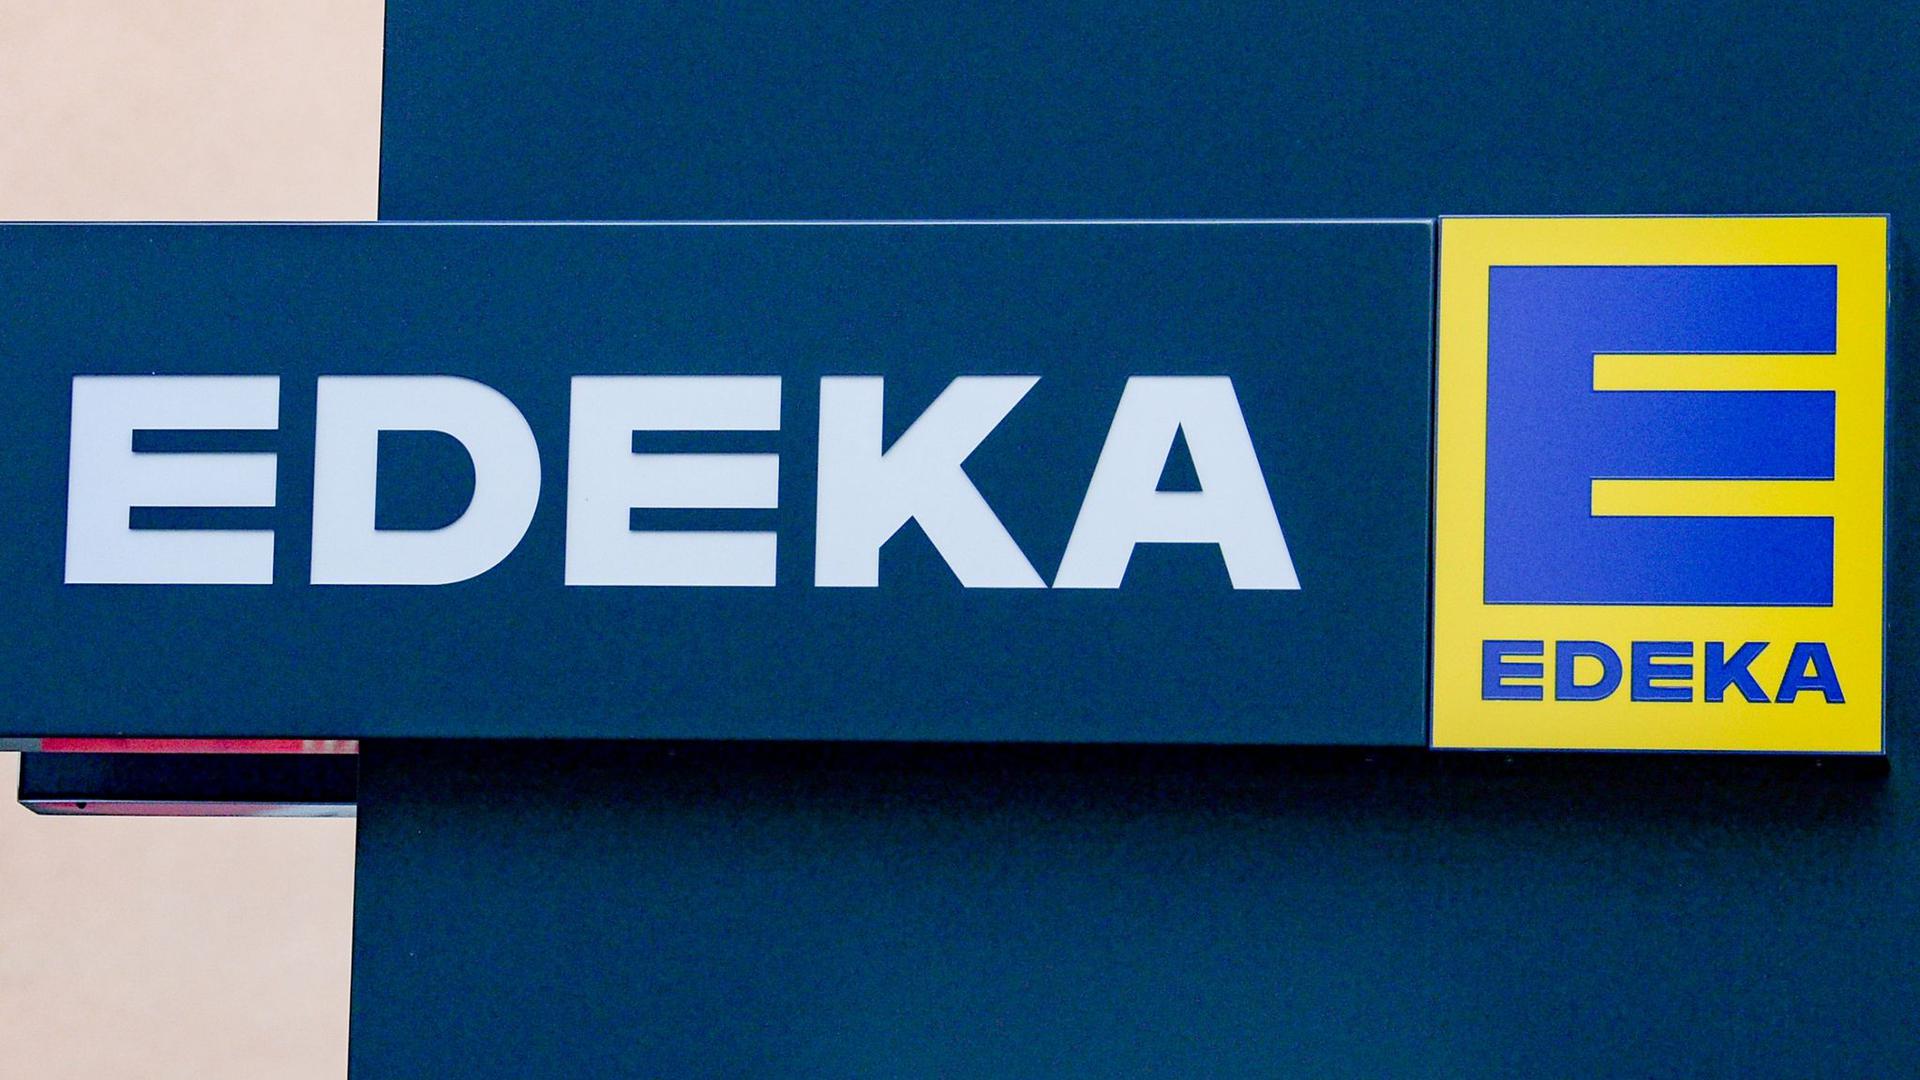 Die Edeka-Gruppe ist Deutschlands größter Lebensmittelhändler.